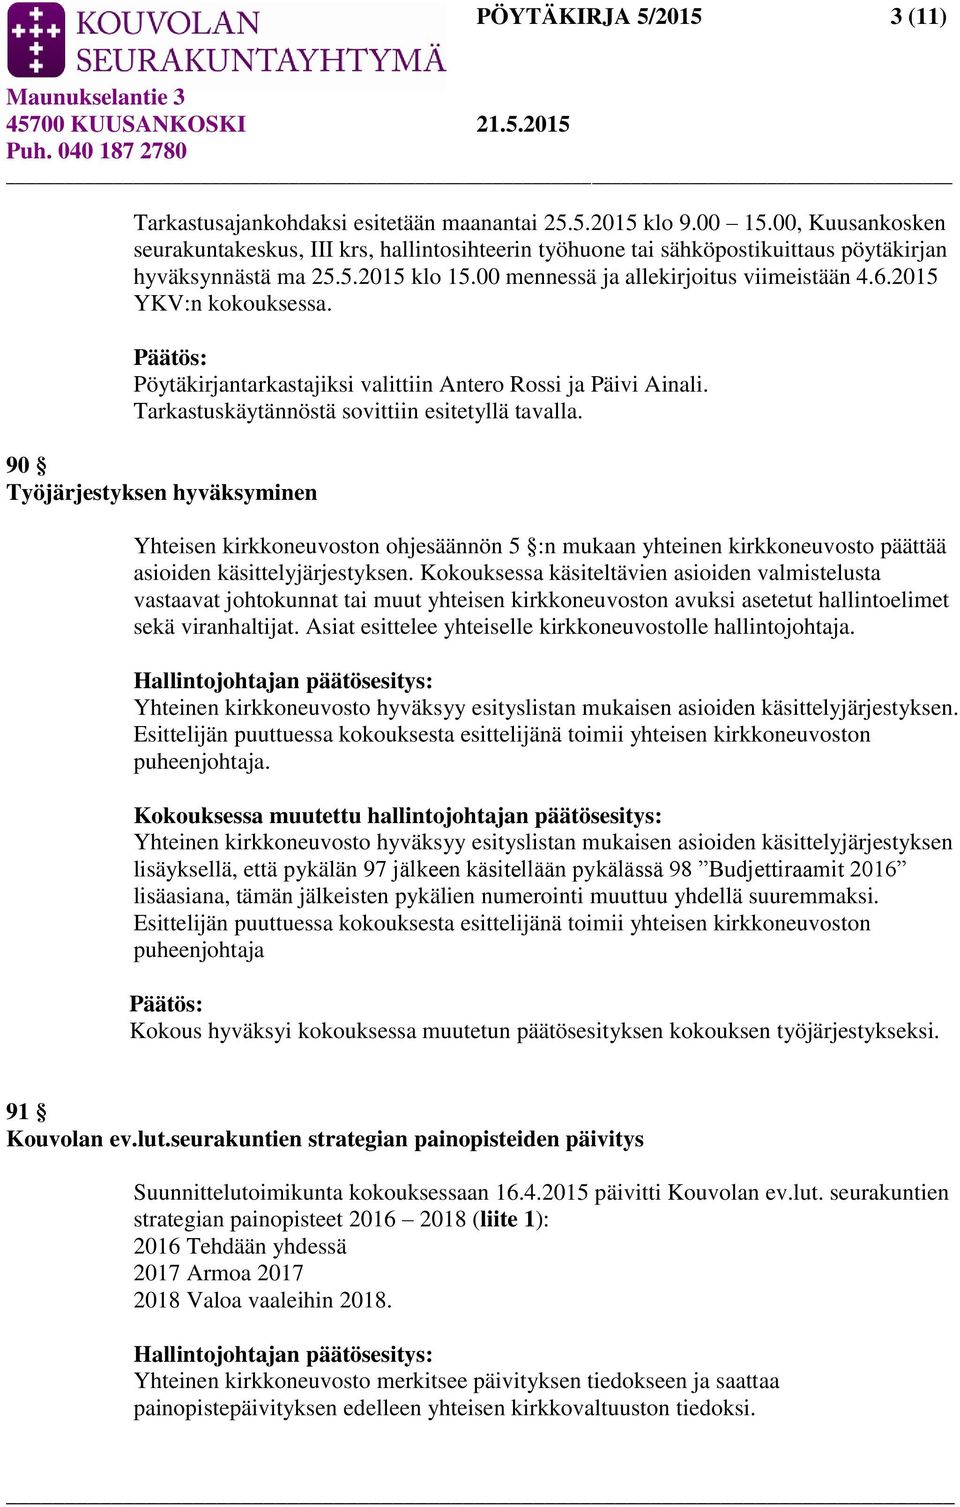 2015 YKV:n kokouksessa. Pöytäkirjantarkastajiksi valittiin Antero Rossi ja Päivi Ainali. Tarkastuskäytännöstä sovittiin esitetyllä tavalla.